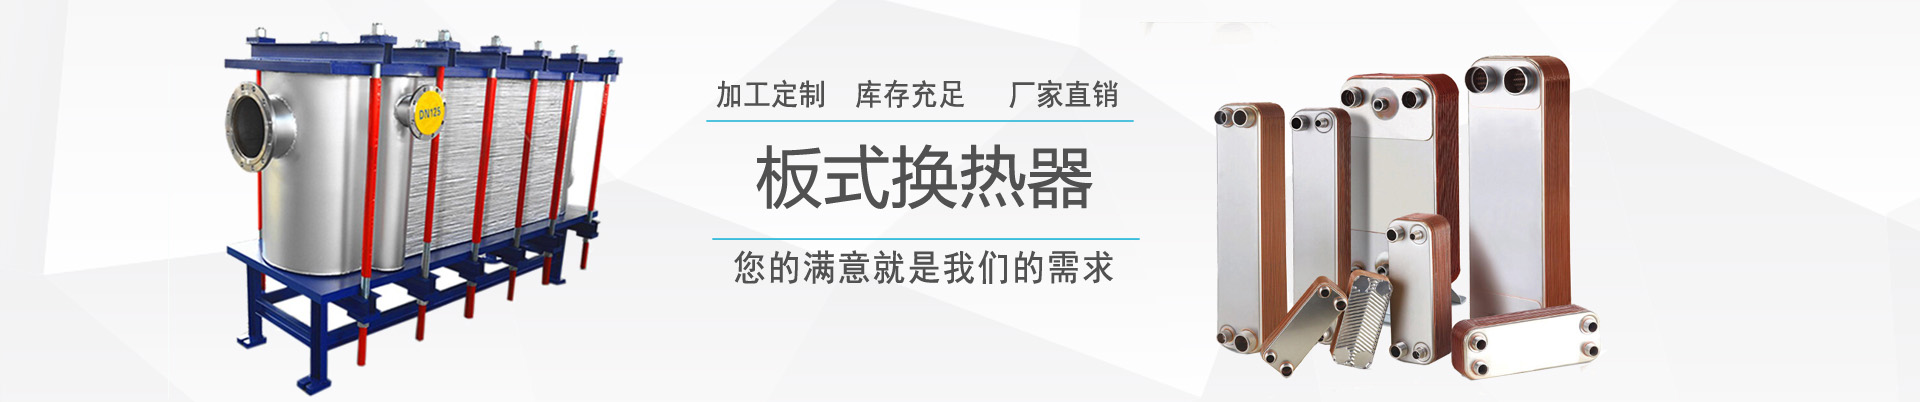 釬焊板式換熱器 - 產品中心 - ,換熱器,板式換熱器,換熱器機組,上海將星化工設備有限公司